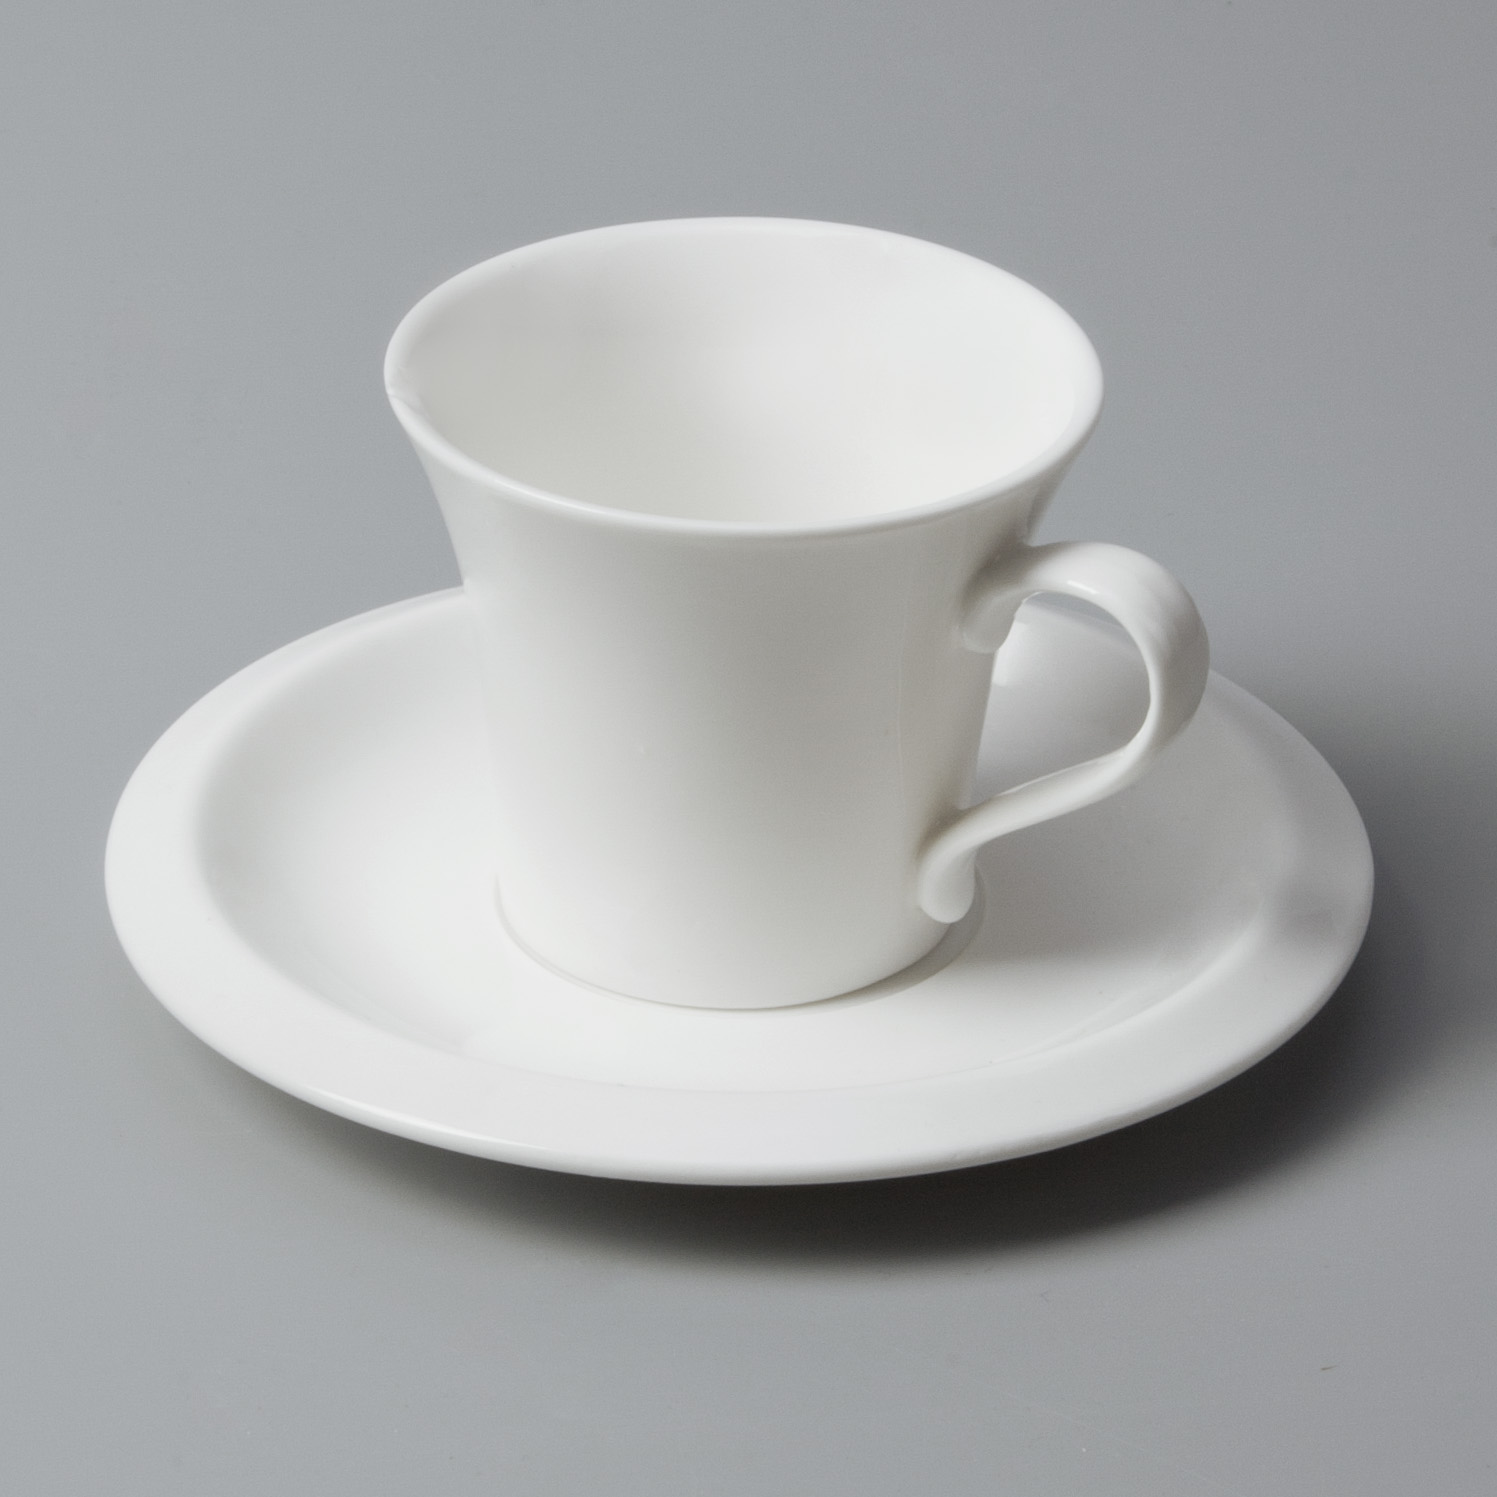 bulk restaurant porcelain dinnerware from China for restaurant Two Eight-6